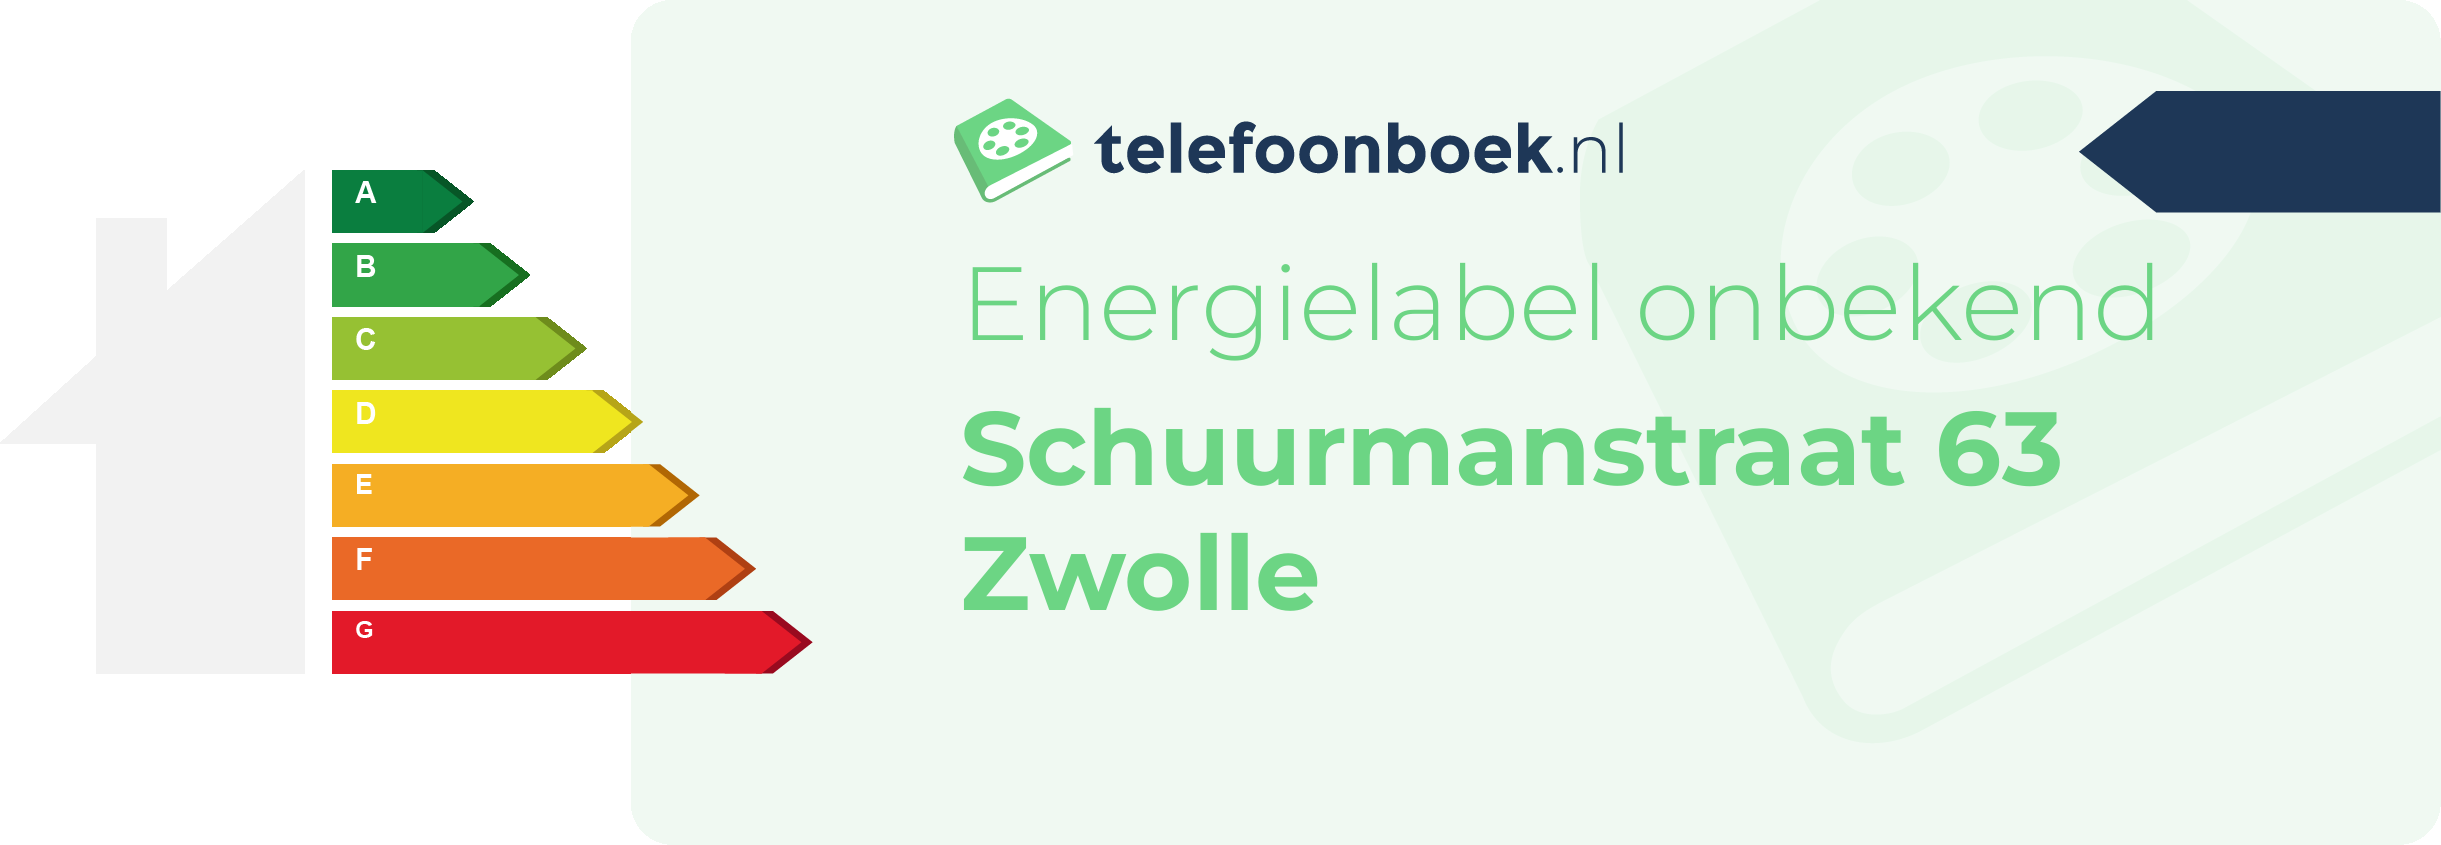 Energielabel Schuurmanstraat 63 Zwolle